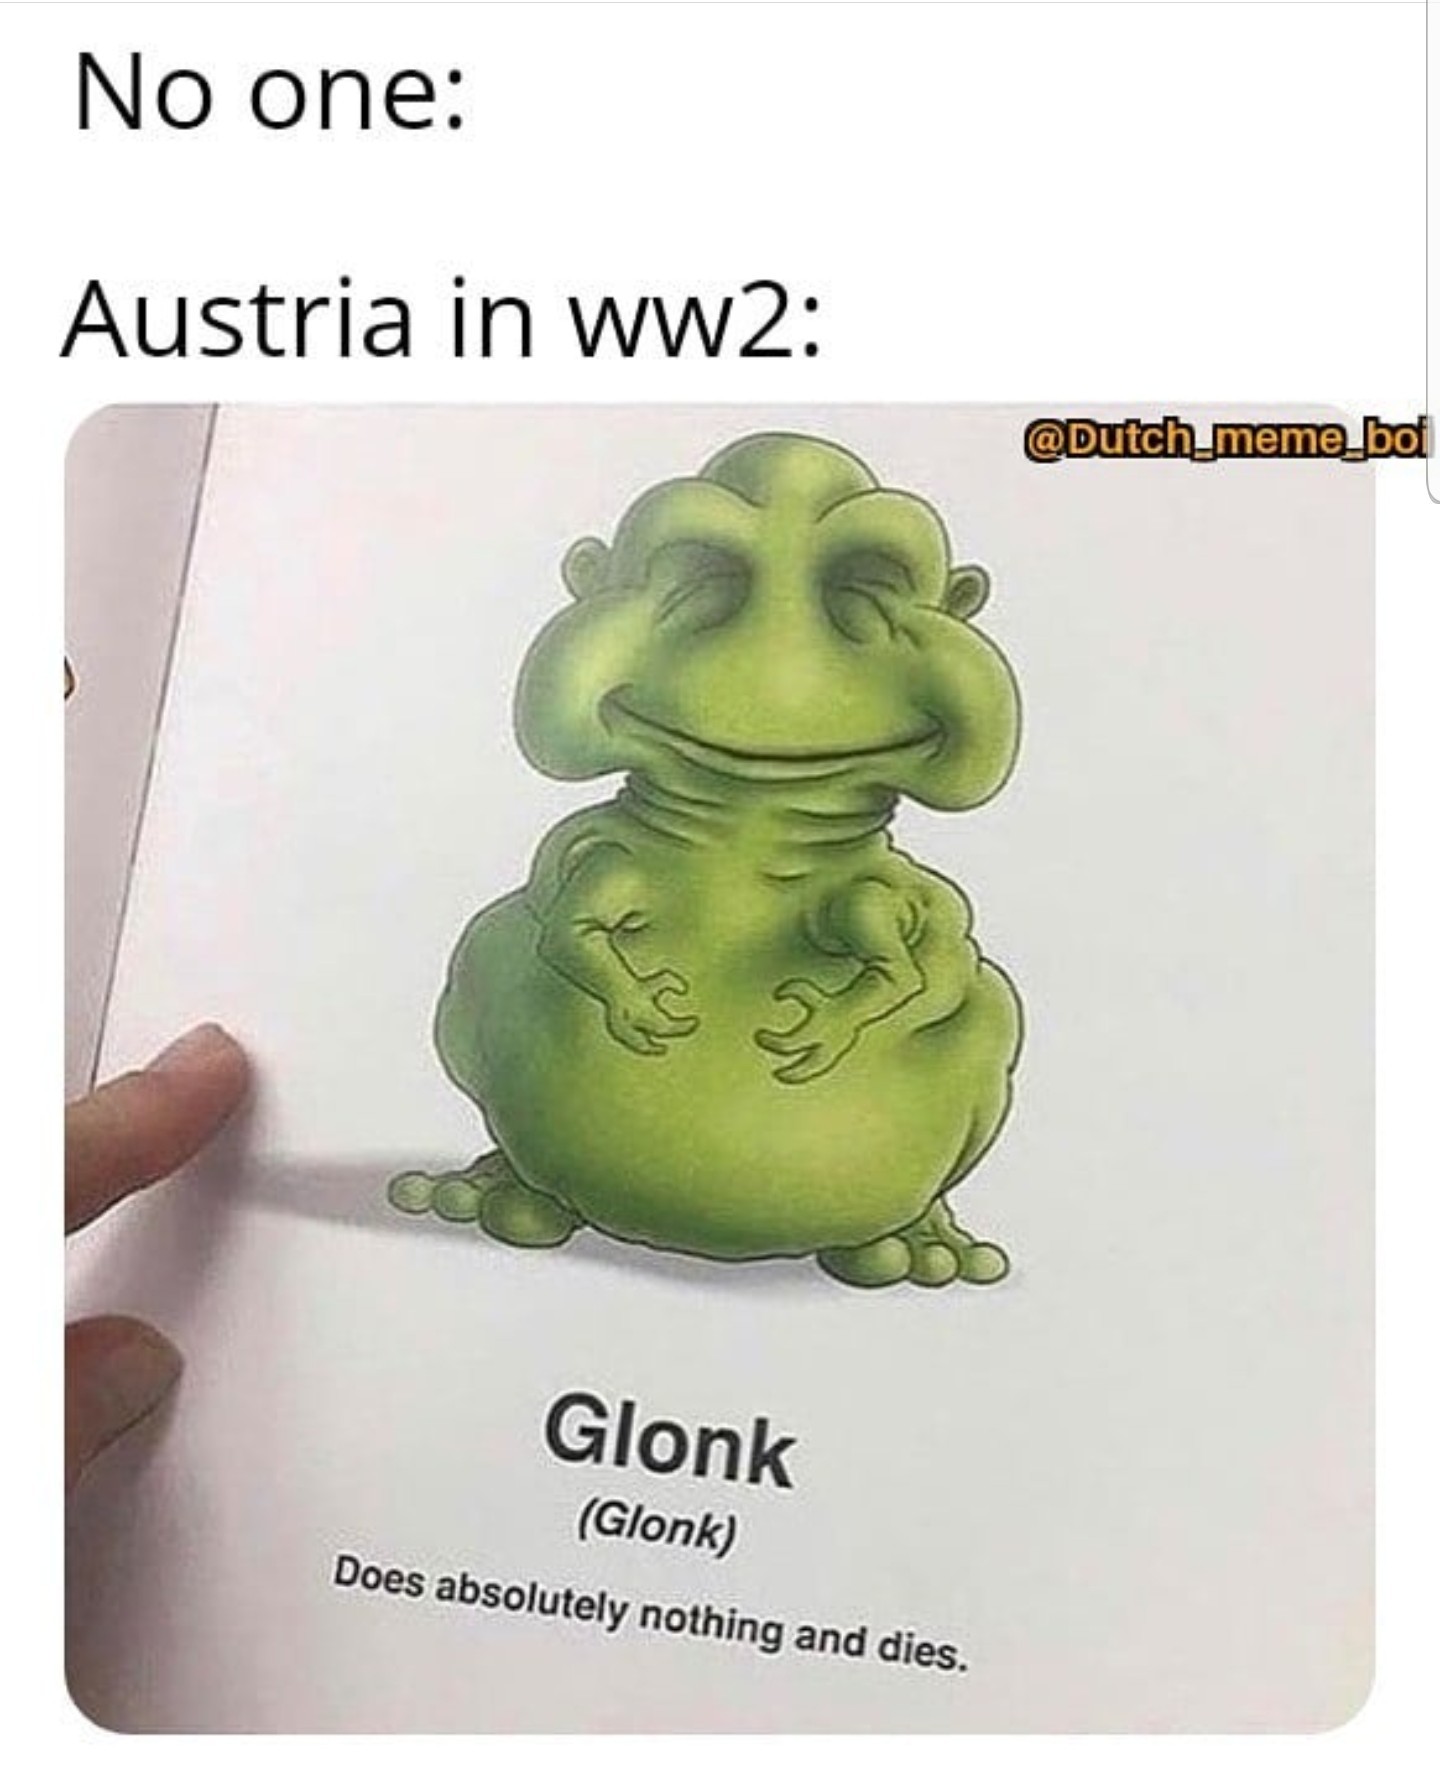 Austria is dumb - meme